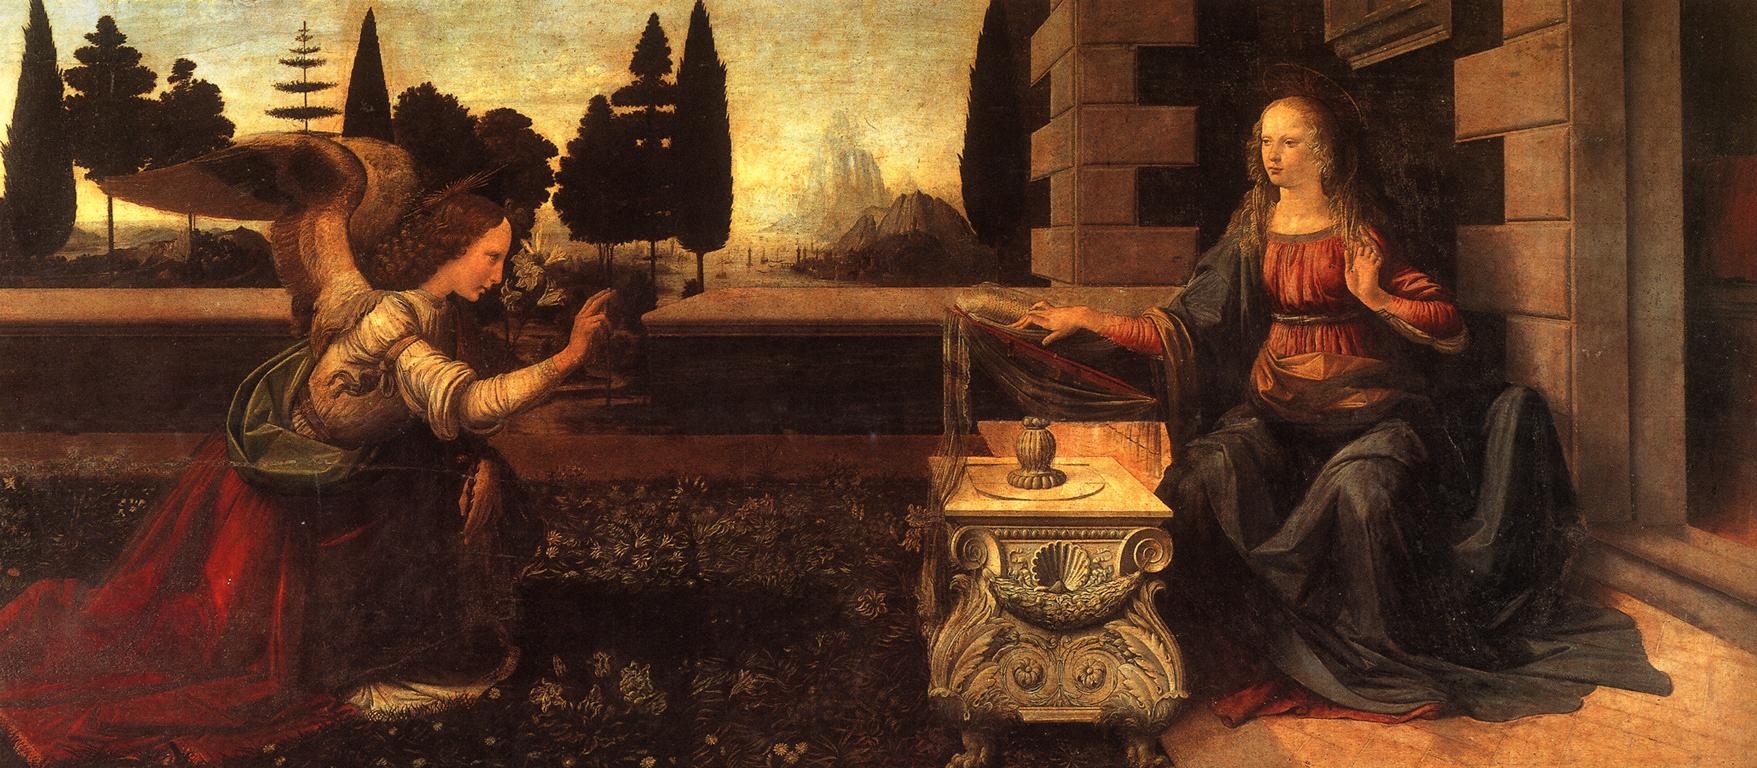 Zwiastowanie by Leonardo da Vinci - c. 1472 - 217 x 98 cm 